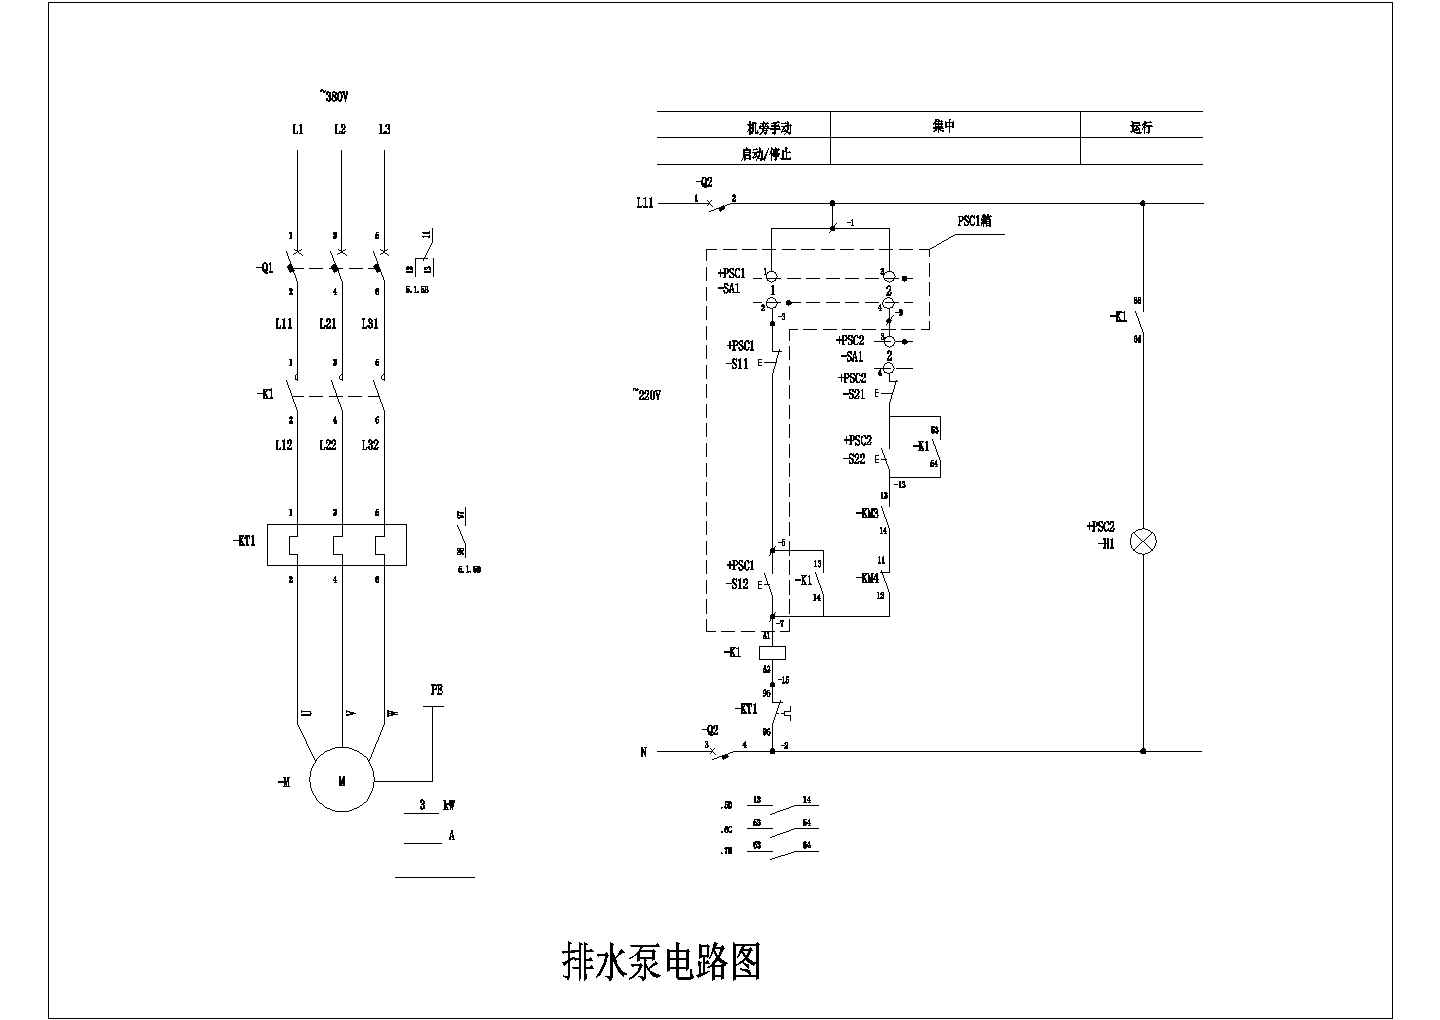 【江苏省】阜宁县某排水泵电路图纸